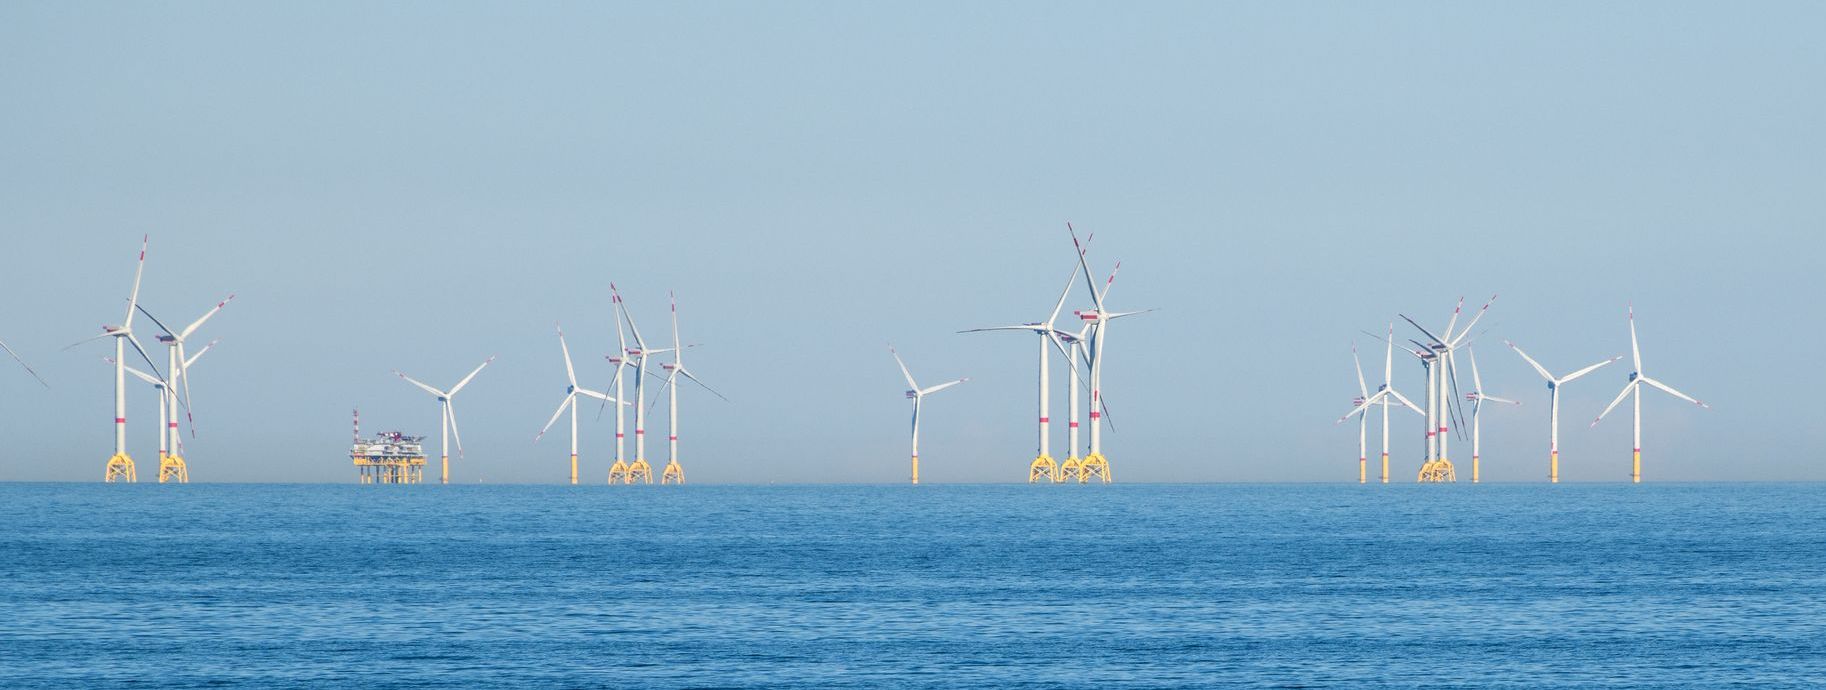 Mehrere Windkrafträder auf offener See mit einer Versorgungstation